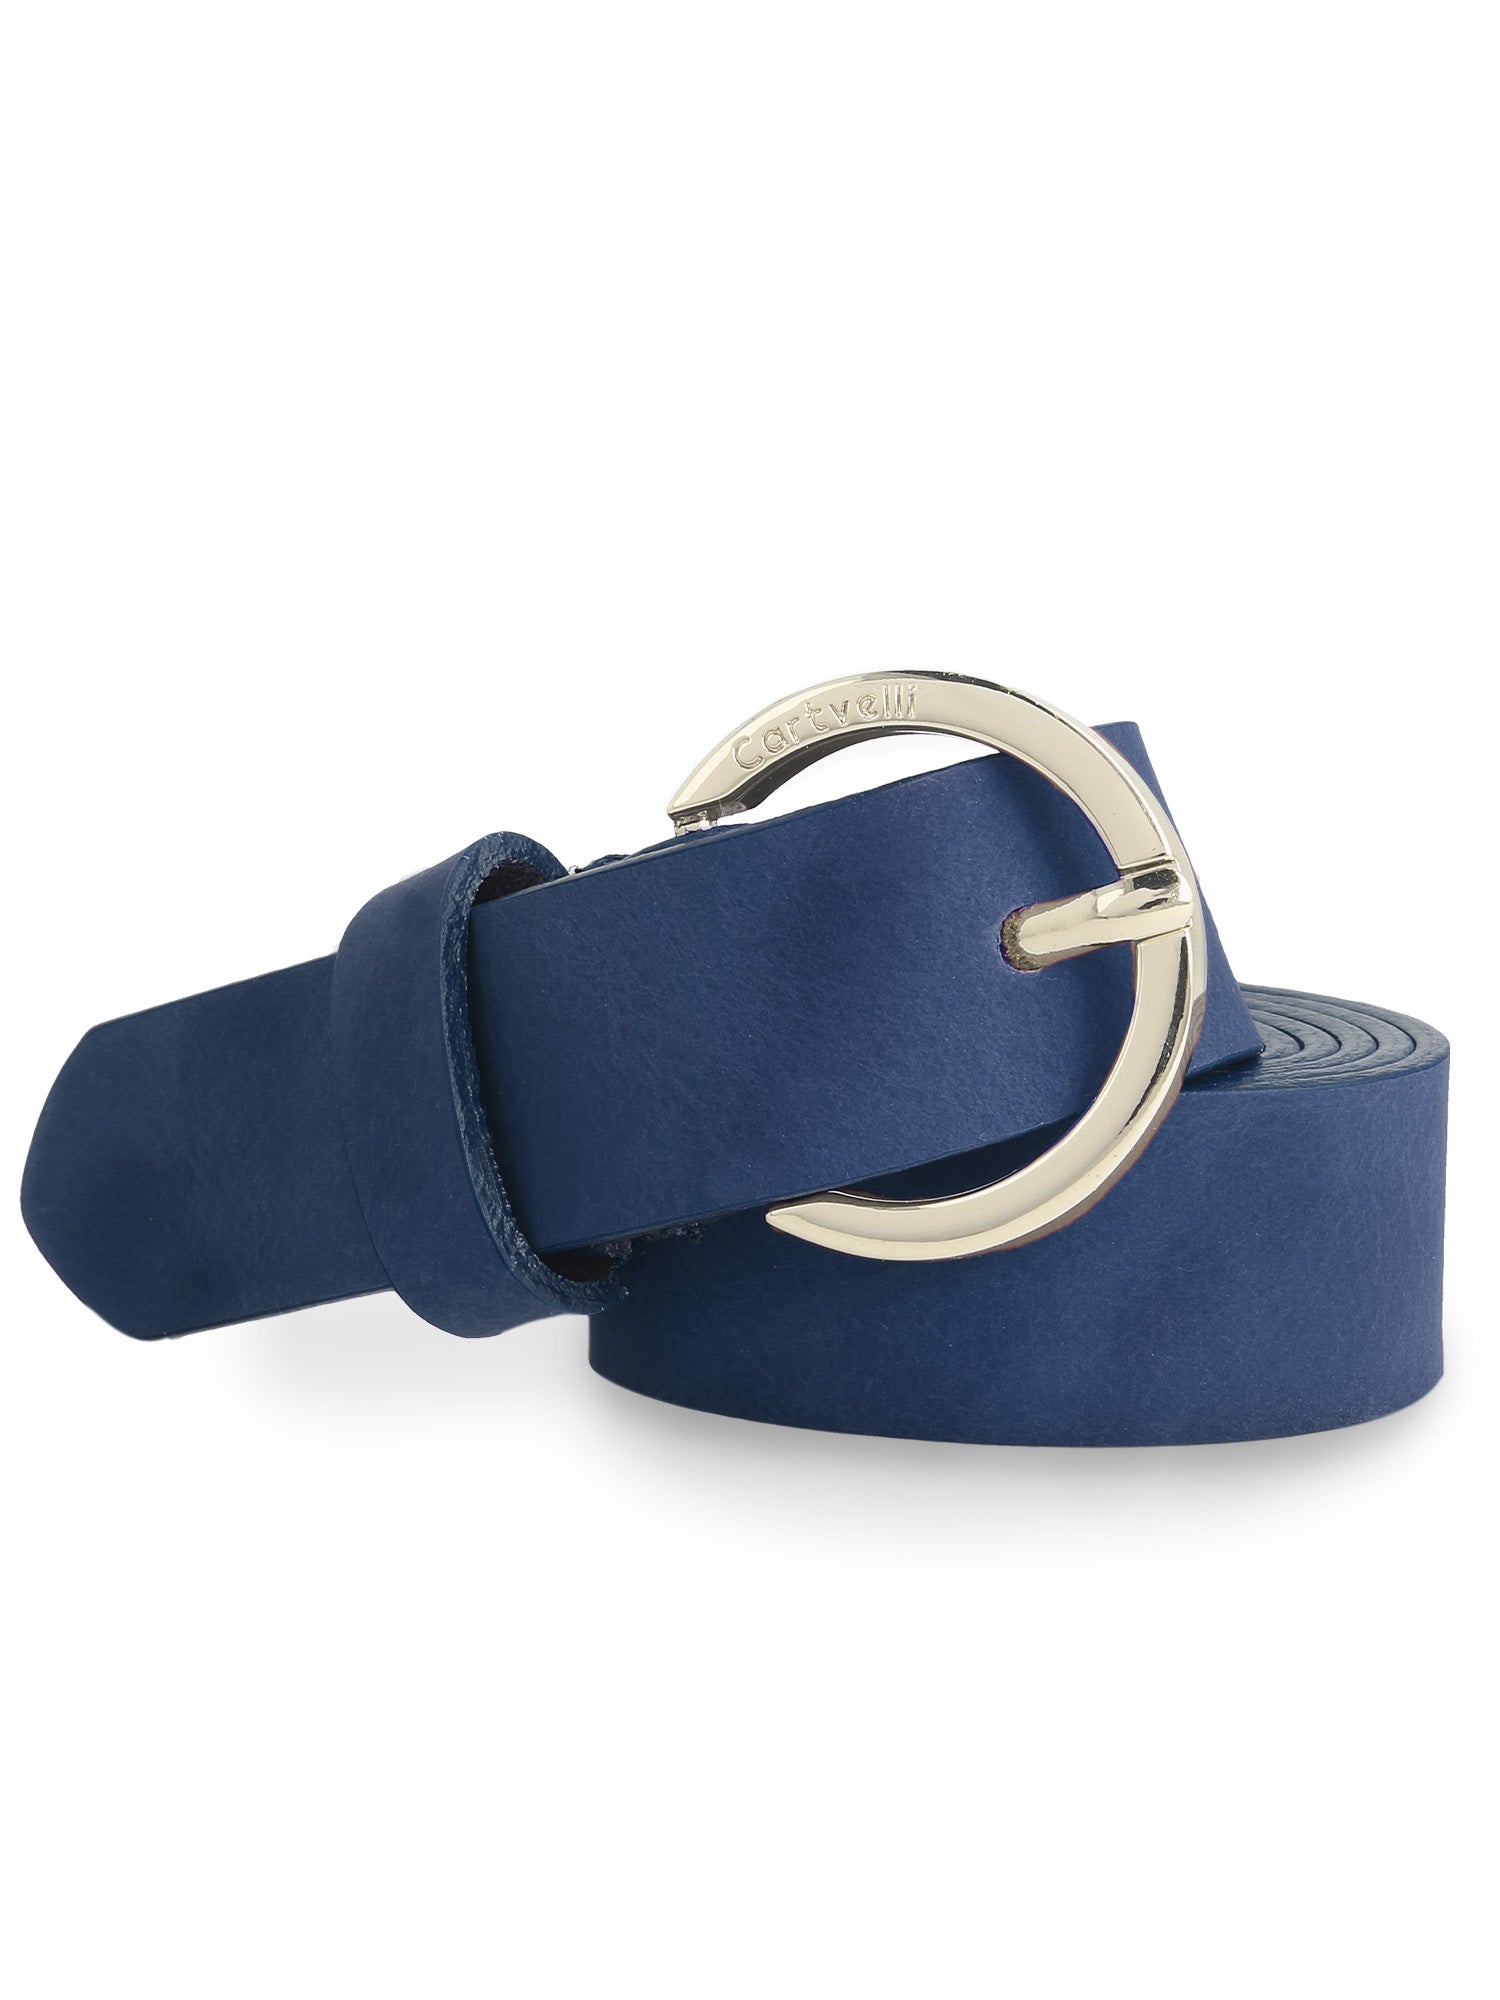 Cartvelli Ledergürtel Damen Blau 2,5cm mit Geschenkbox - Schließe Gold